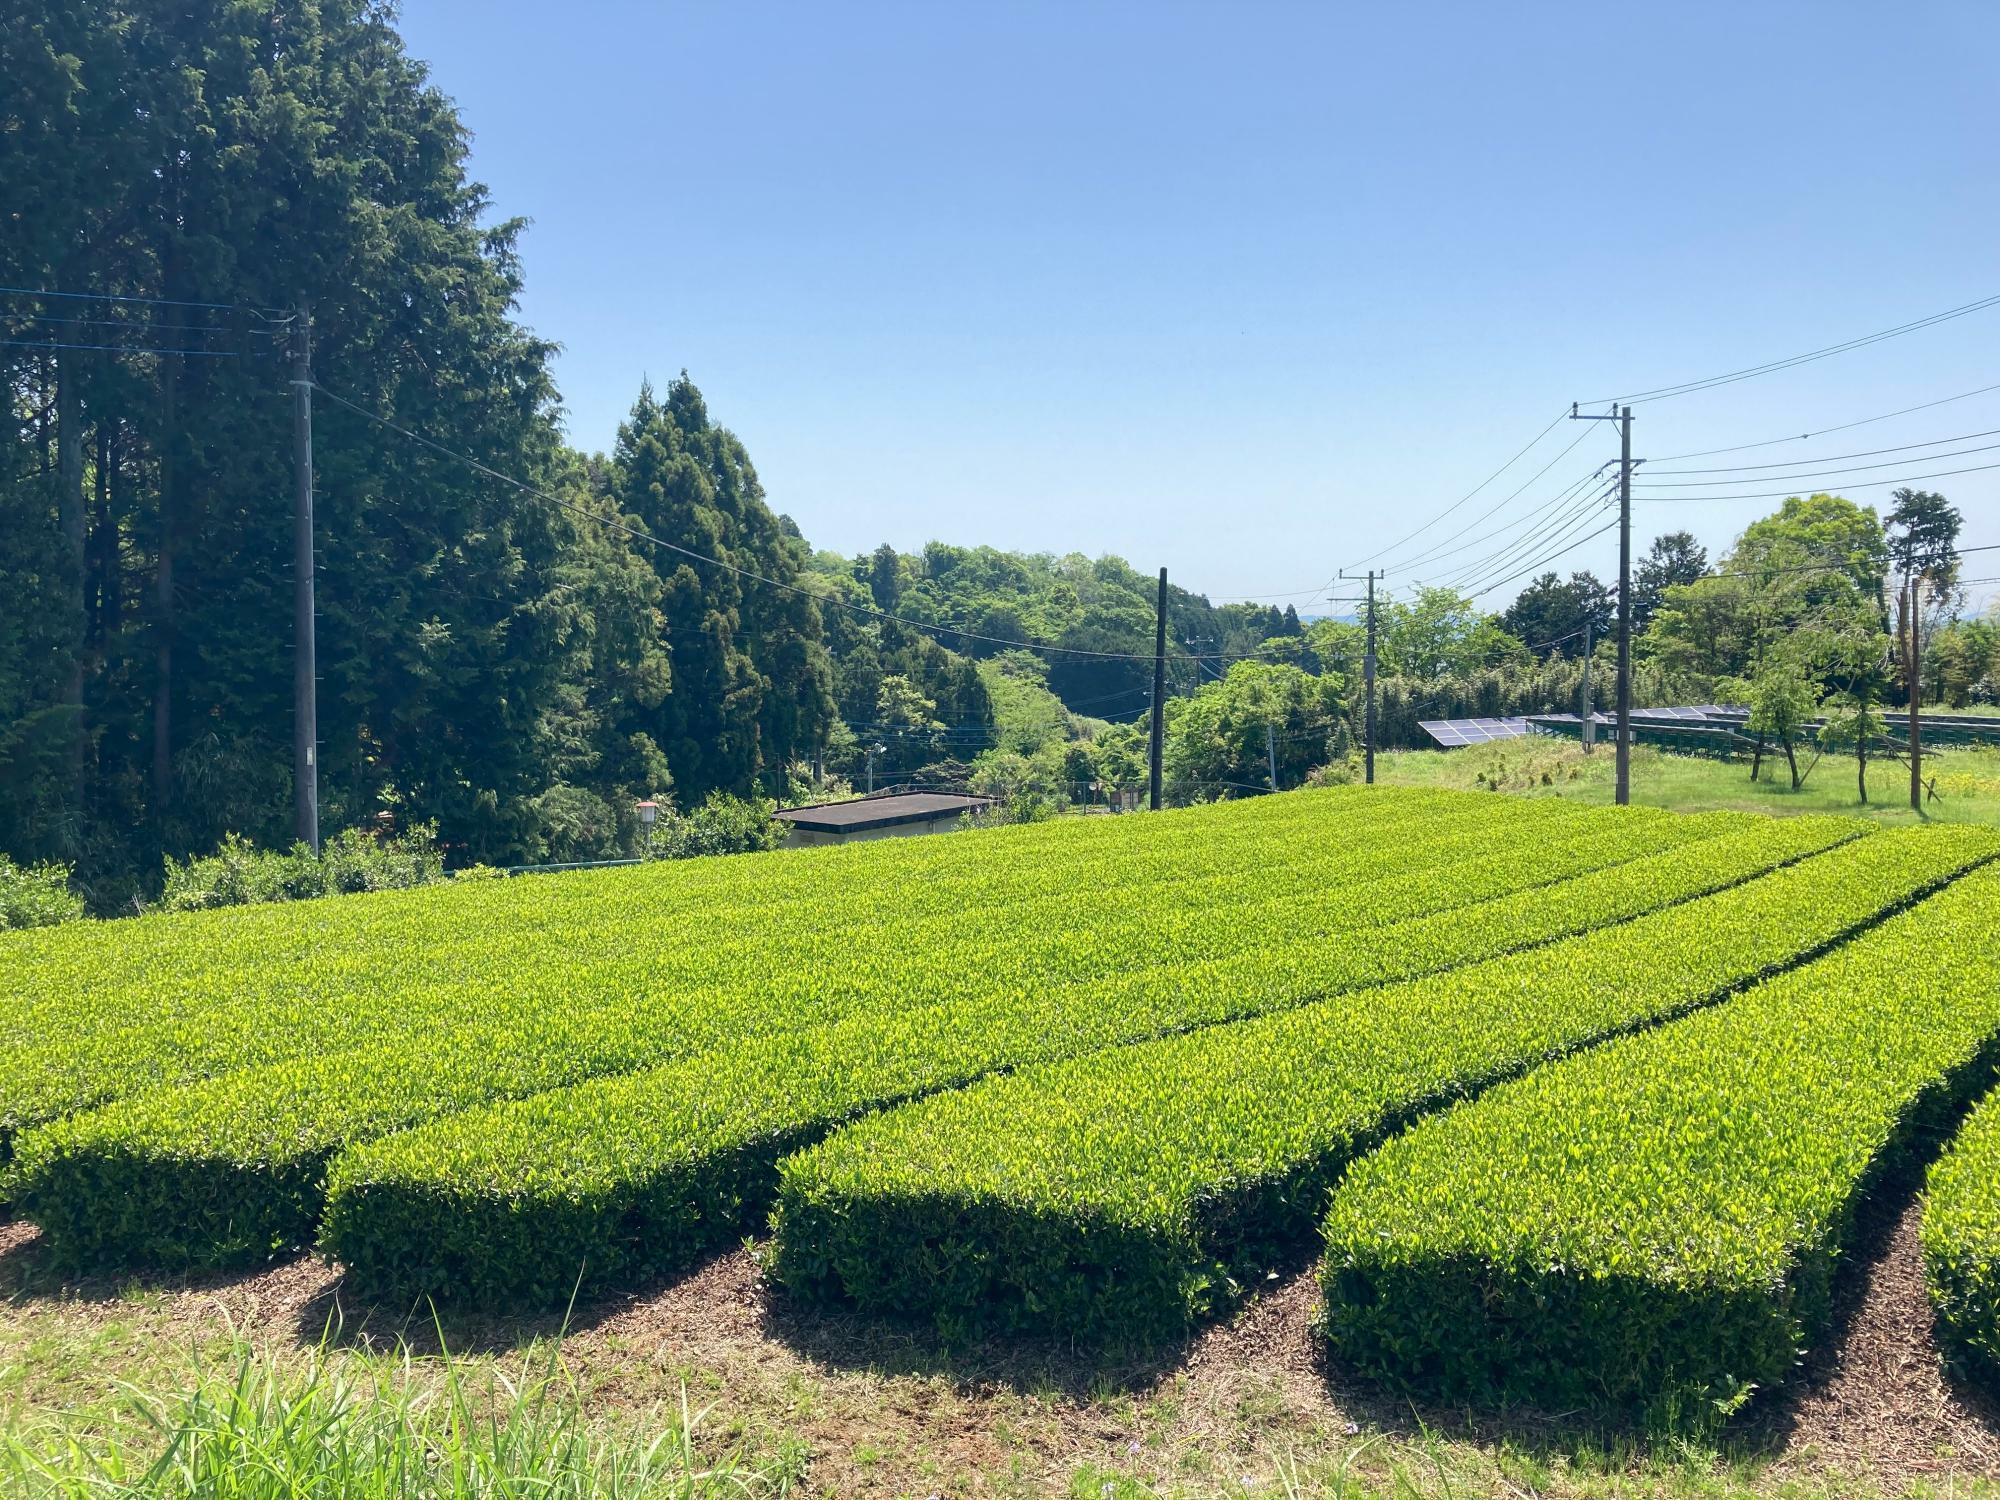 「むさしかおり」という品種の茶畑。こちらも珍しい品種です。